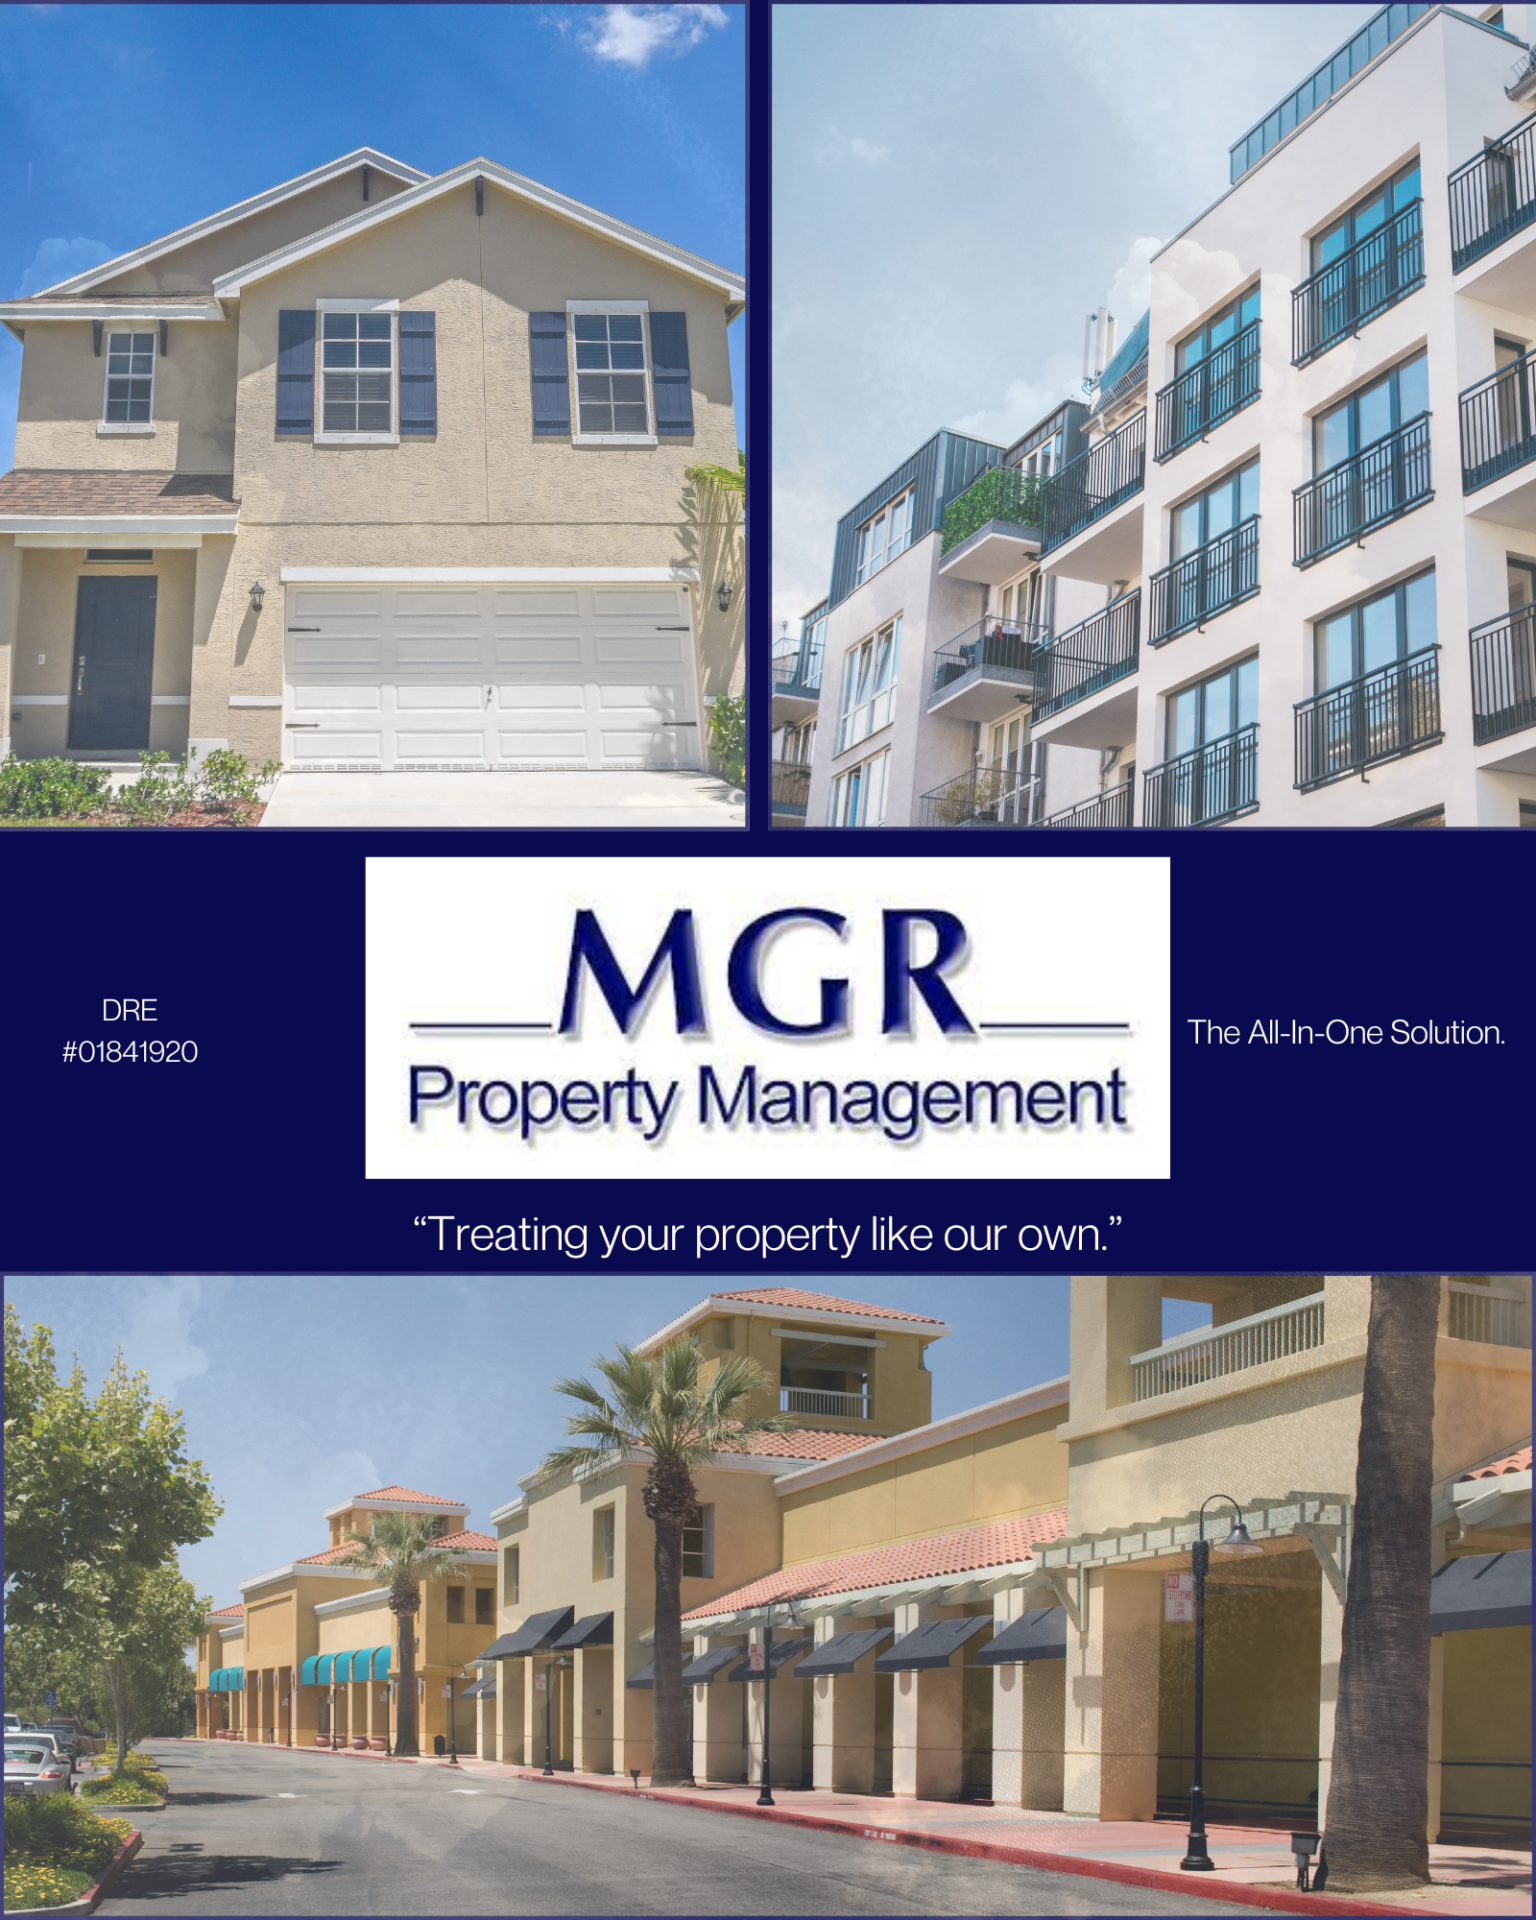 MGR Property Management